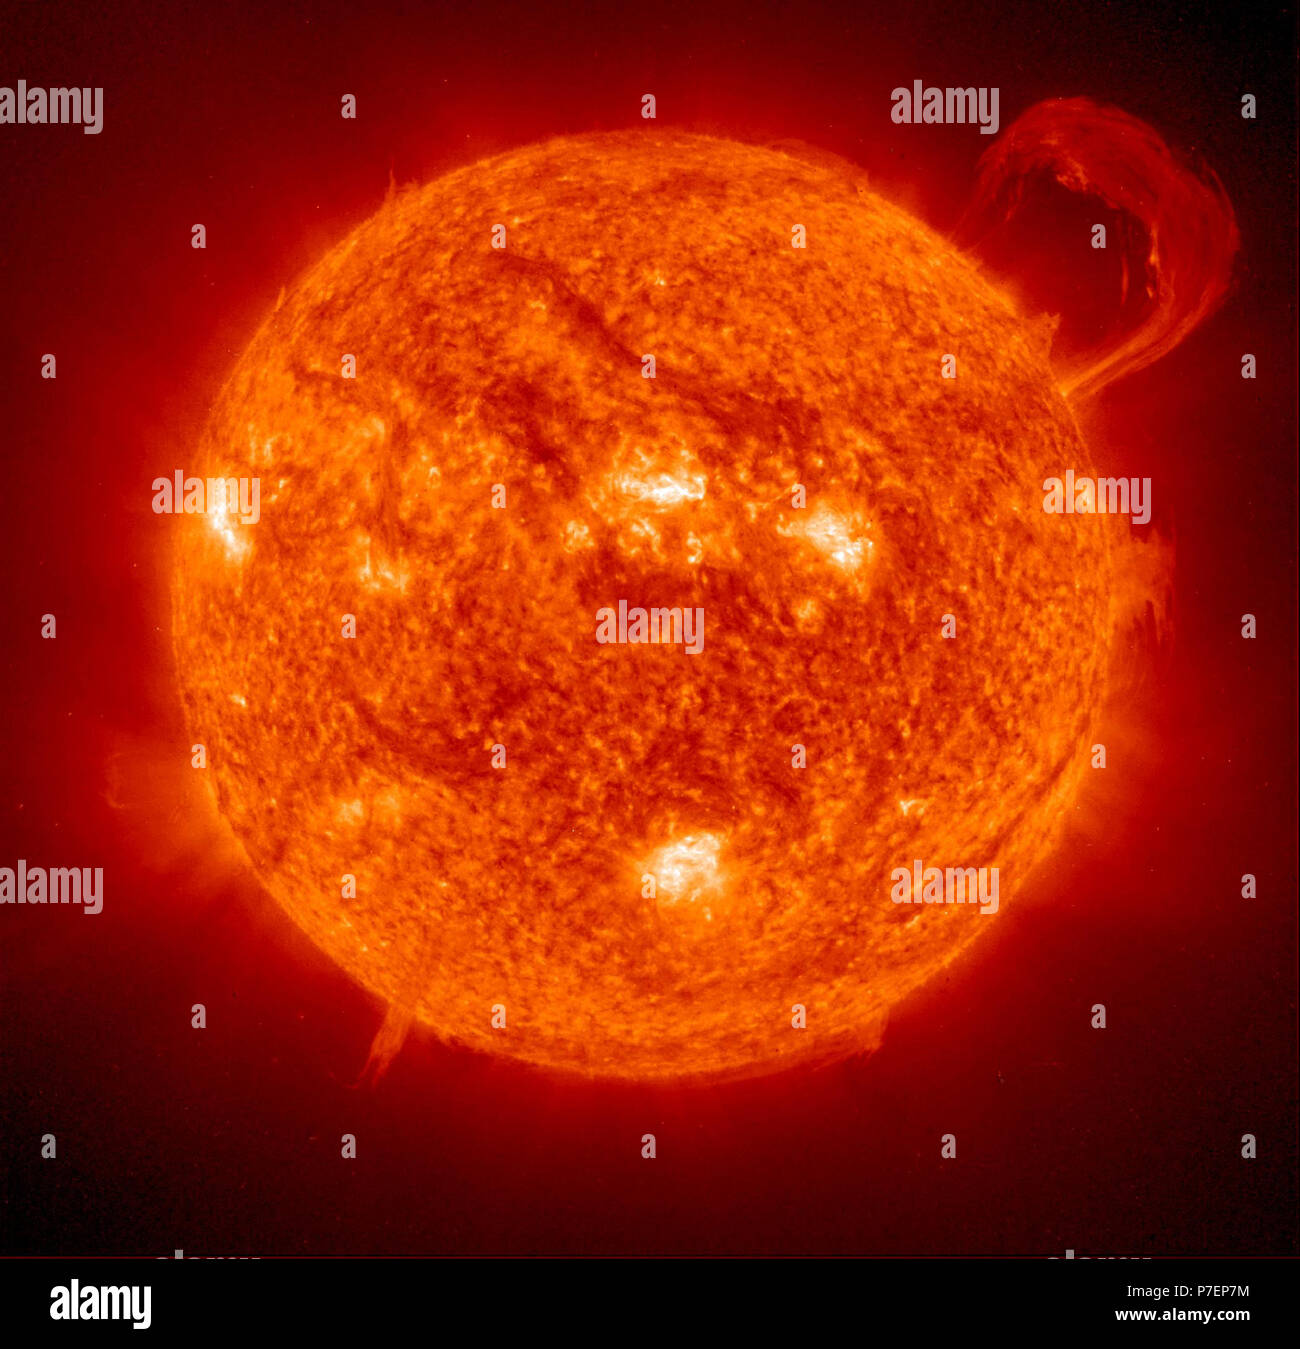 Hot thin Corona der Sonne. Die NASA-Extreme Ultraviolet Imaging Telescope an Bord der ESA-Raumsonde SOHO nahm dieses Bild eines riesigen, Griff-Form in 1999. Protuberanzen sind riesige Wolken von relativ kühl dichtes Plasma in heißen, dünne Korona der Sonne ausgesetzt. Stockfoto